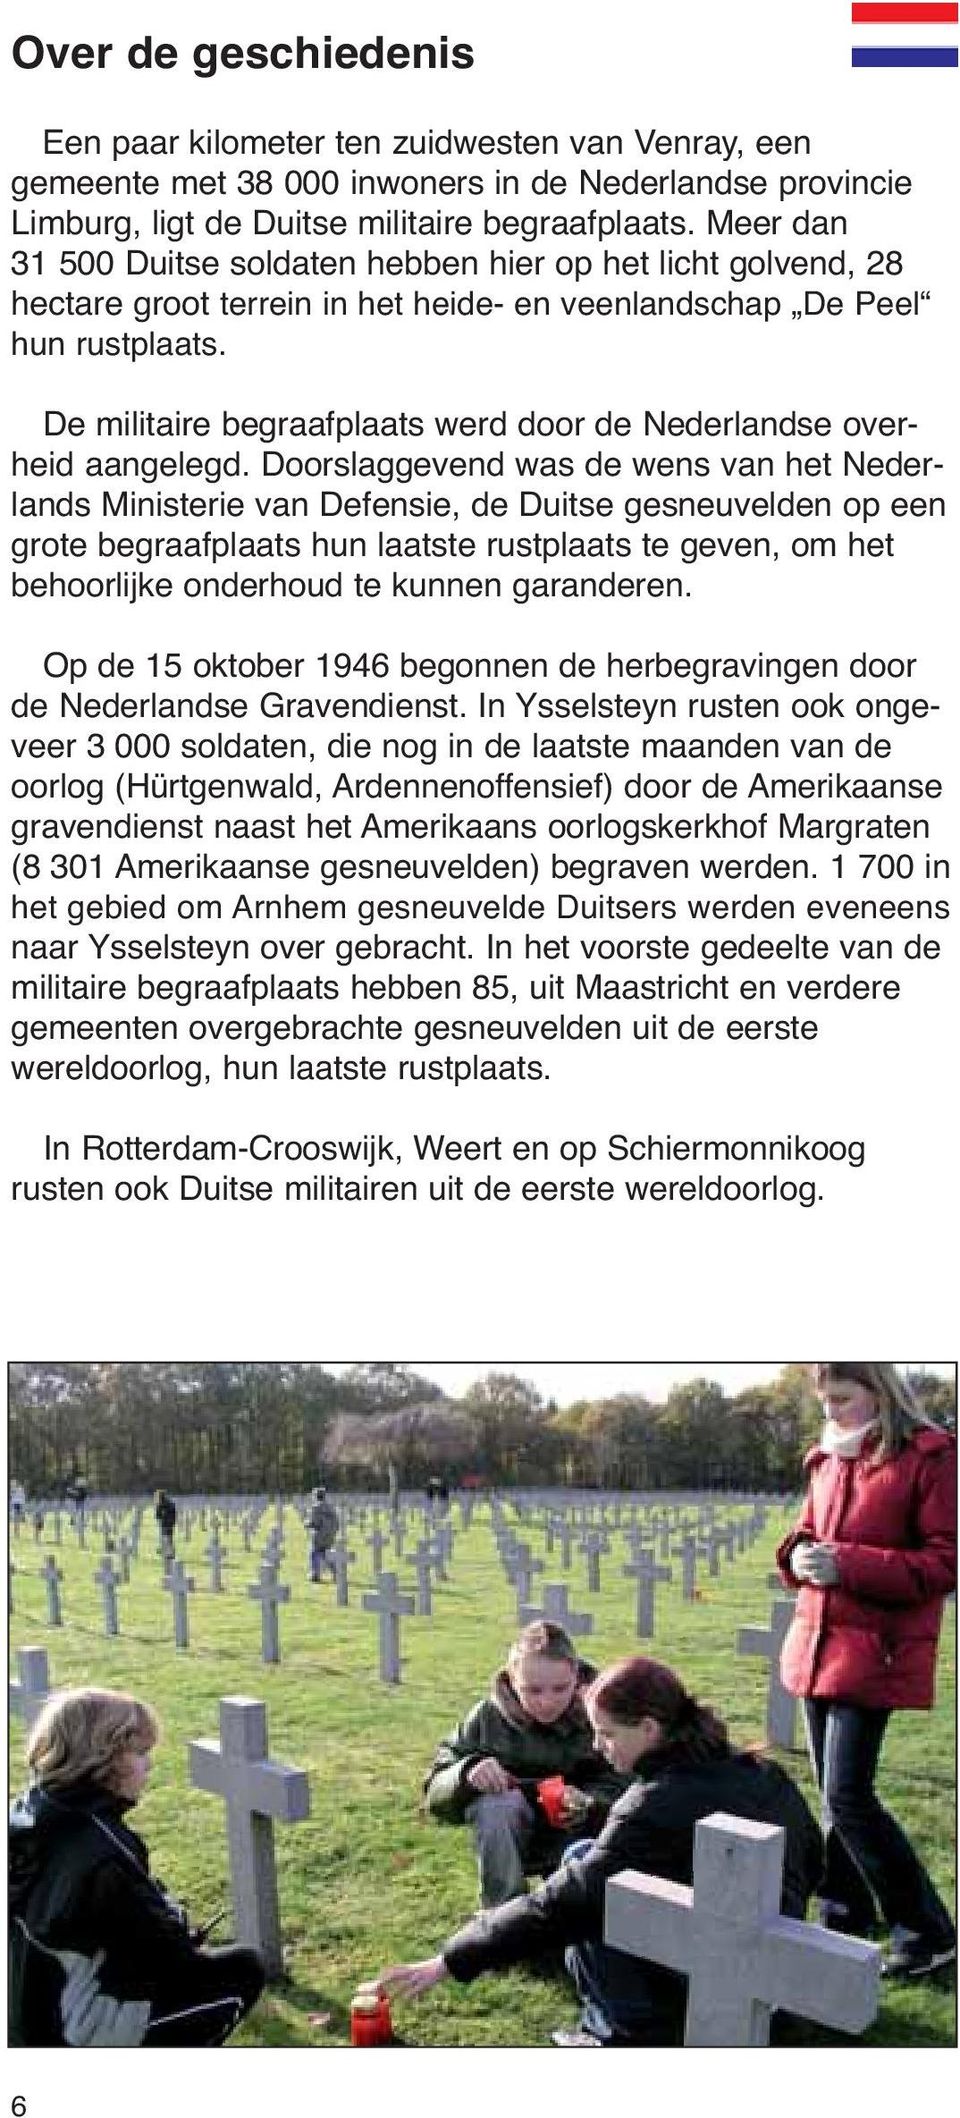 De militaire begraafplaats werd door de Nederlandse overheid aangelegd.